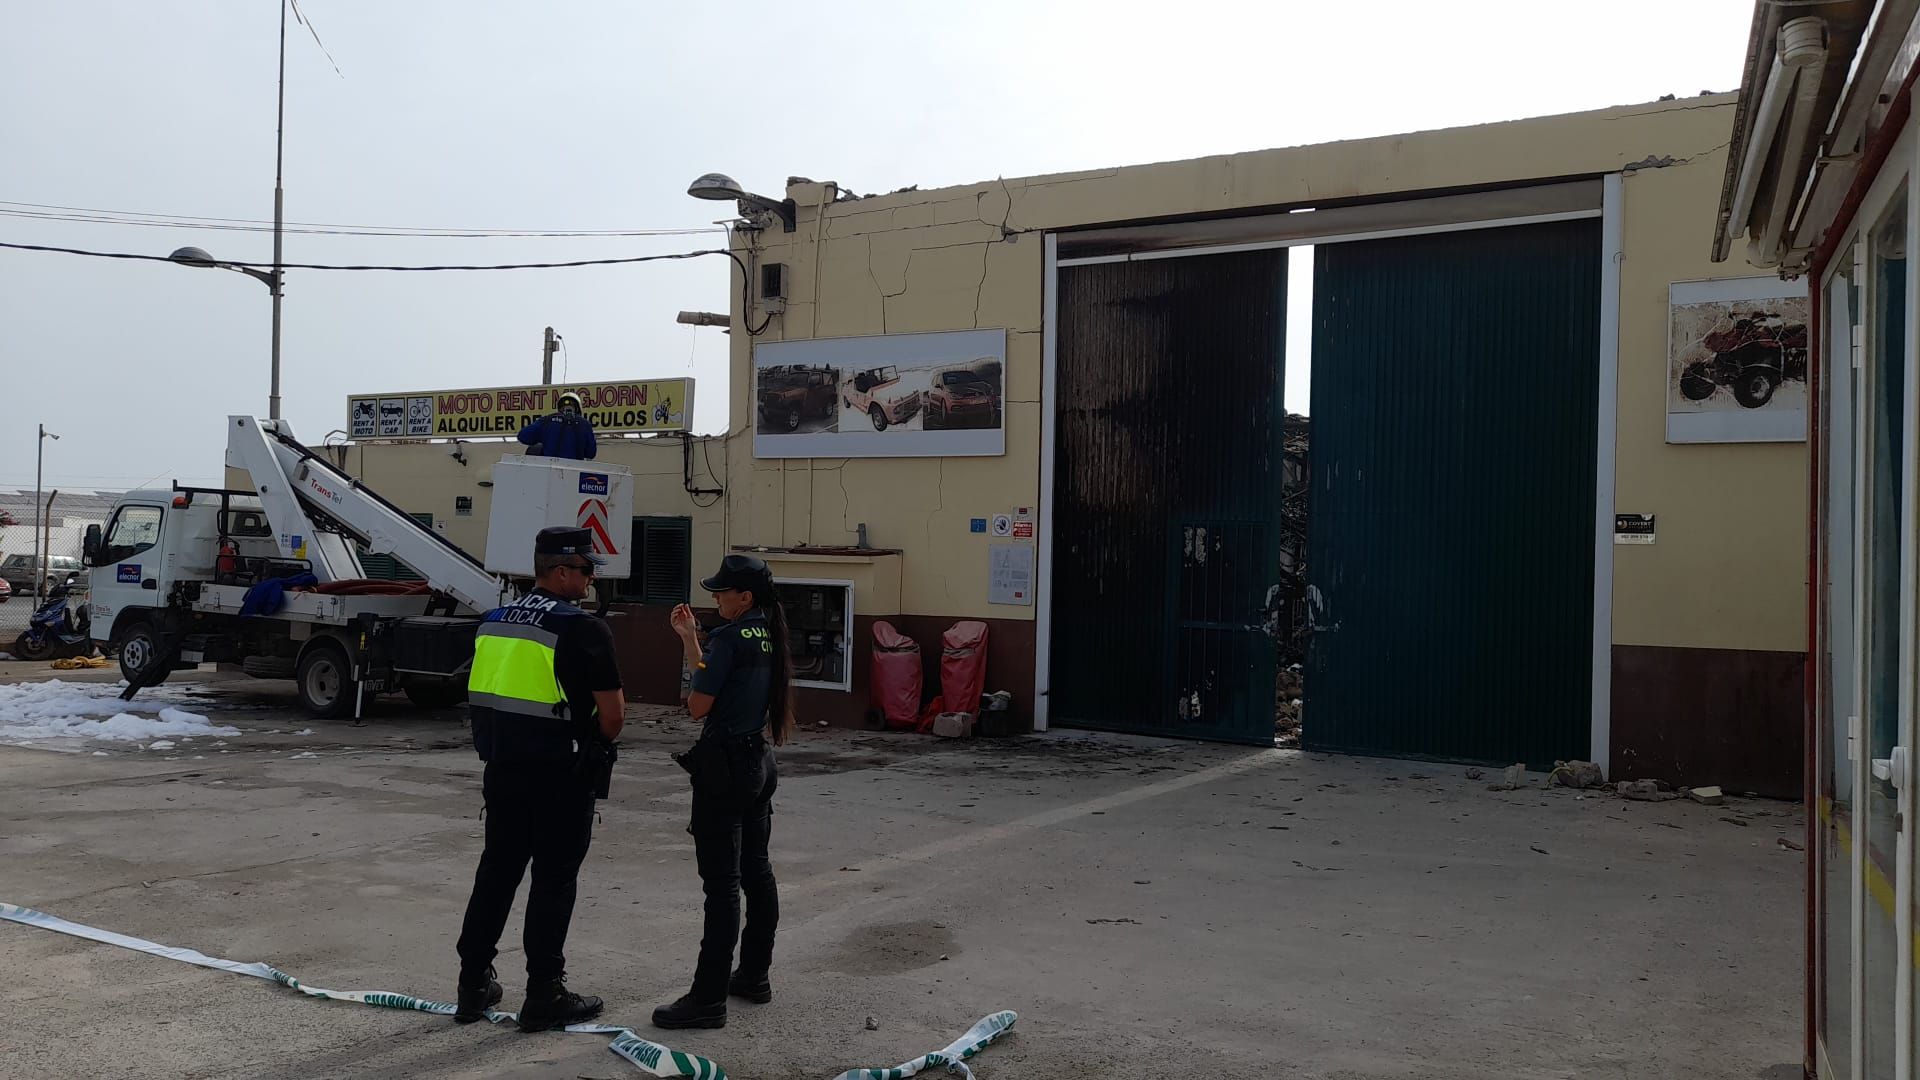 Galería de imágenes del incendio en un almacén industrial de vehículos de alquiler en Formentera